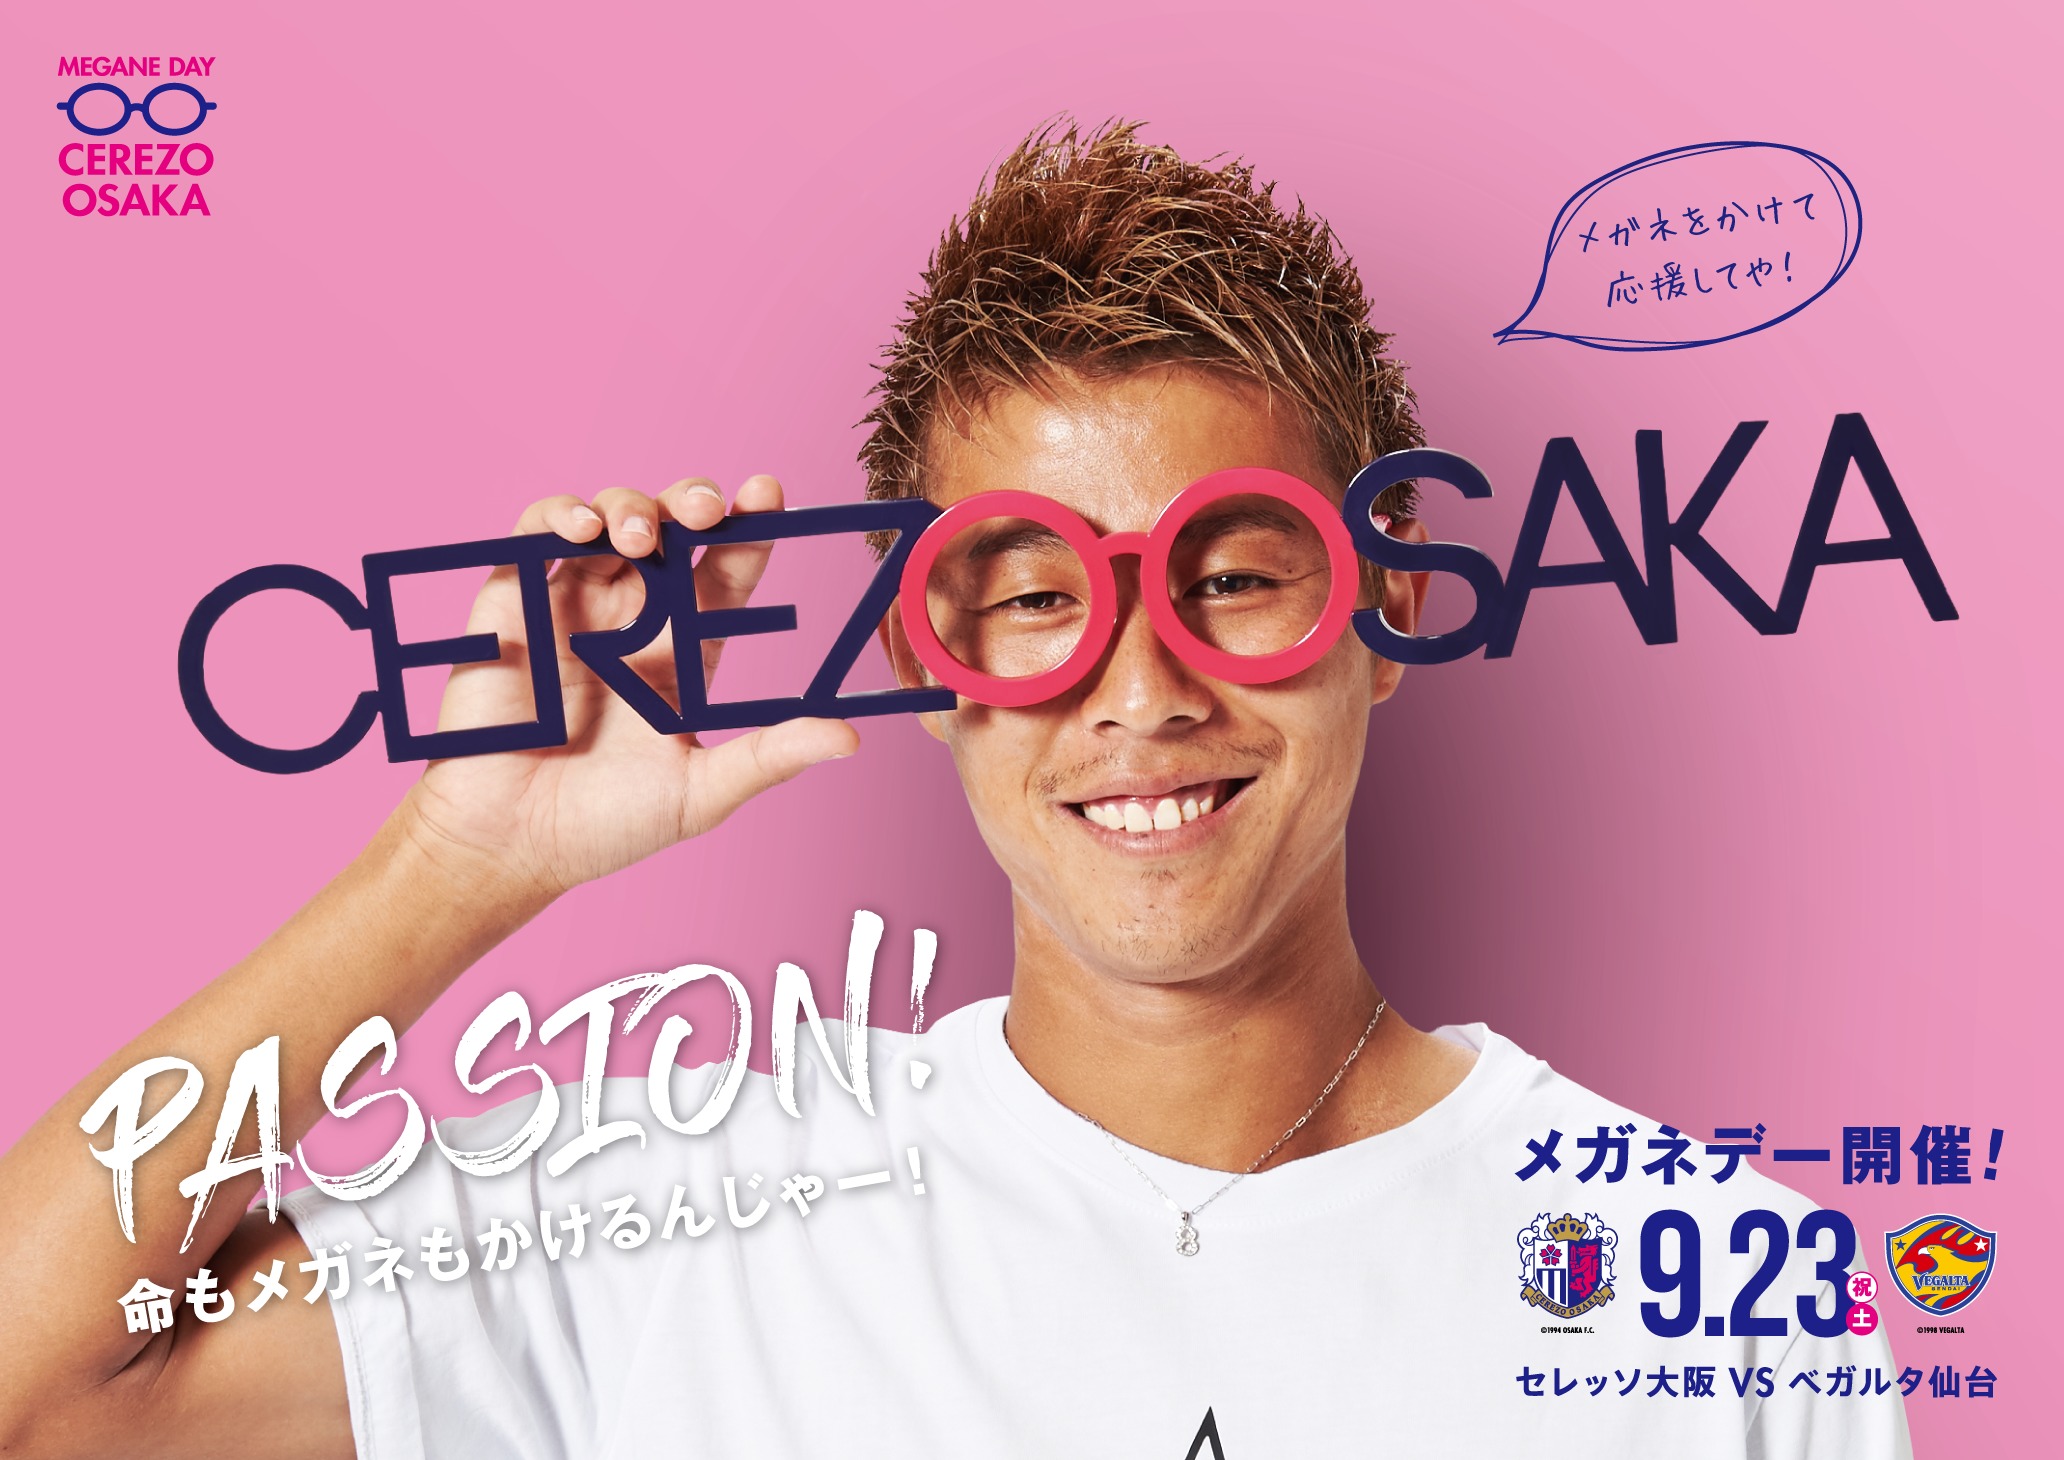 メガネを着用してC大阪を応援しよう!